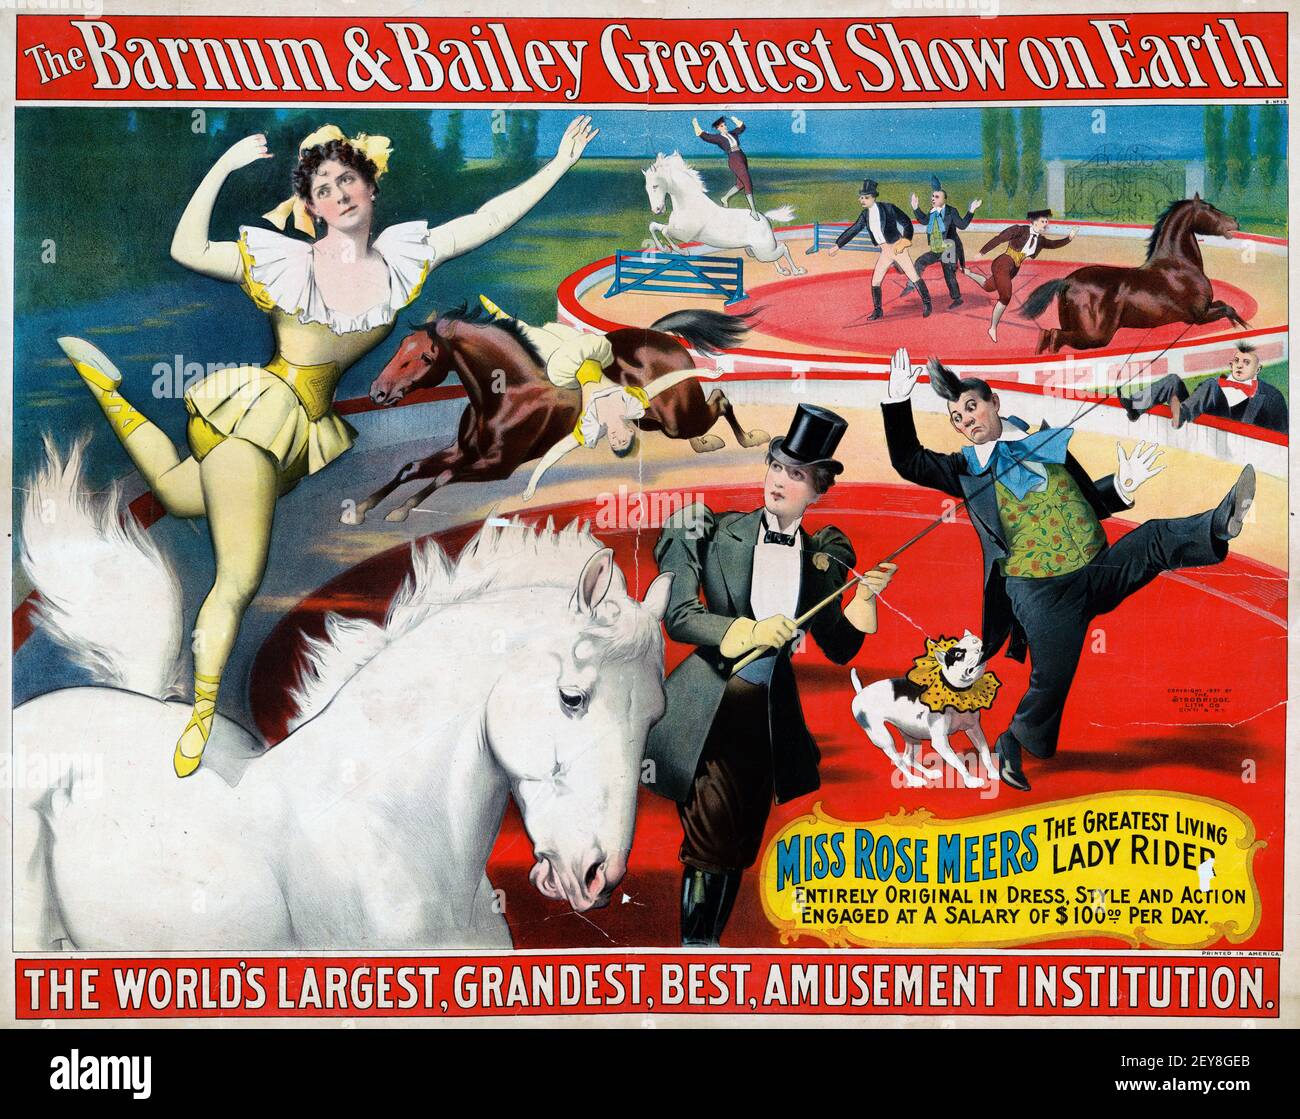 The Barnum & Bailey Greatest Show on Earth. Klassisches Zirkusposter, alter und Vintage-Stil. Antike Werbetafel. Stockfoto